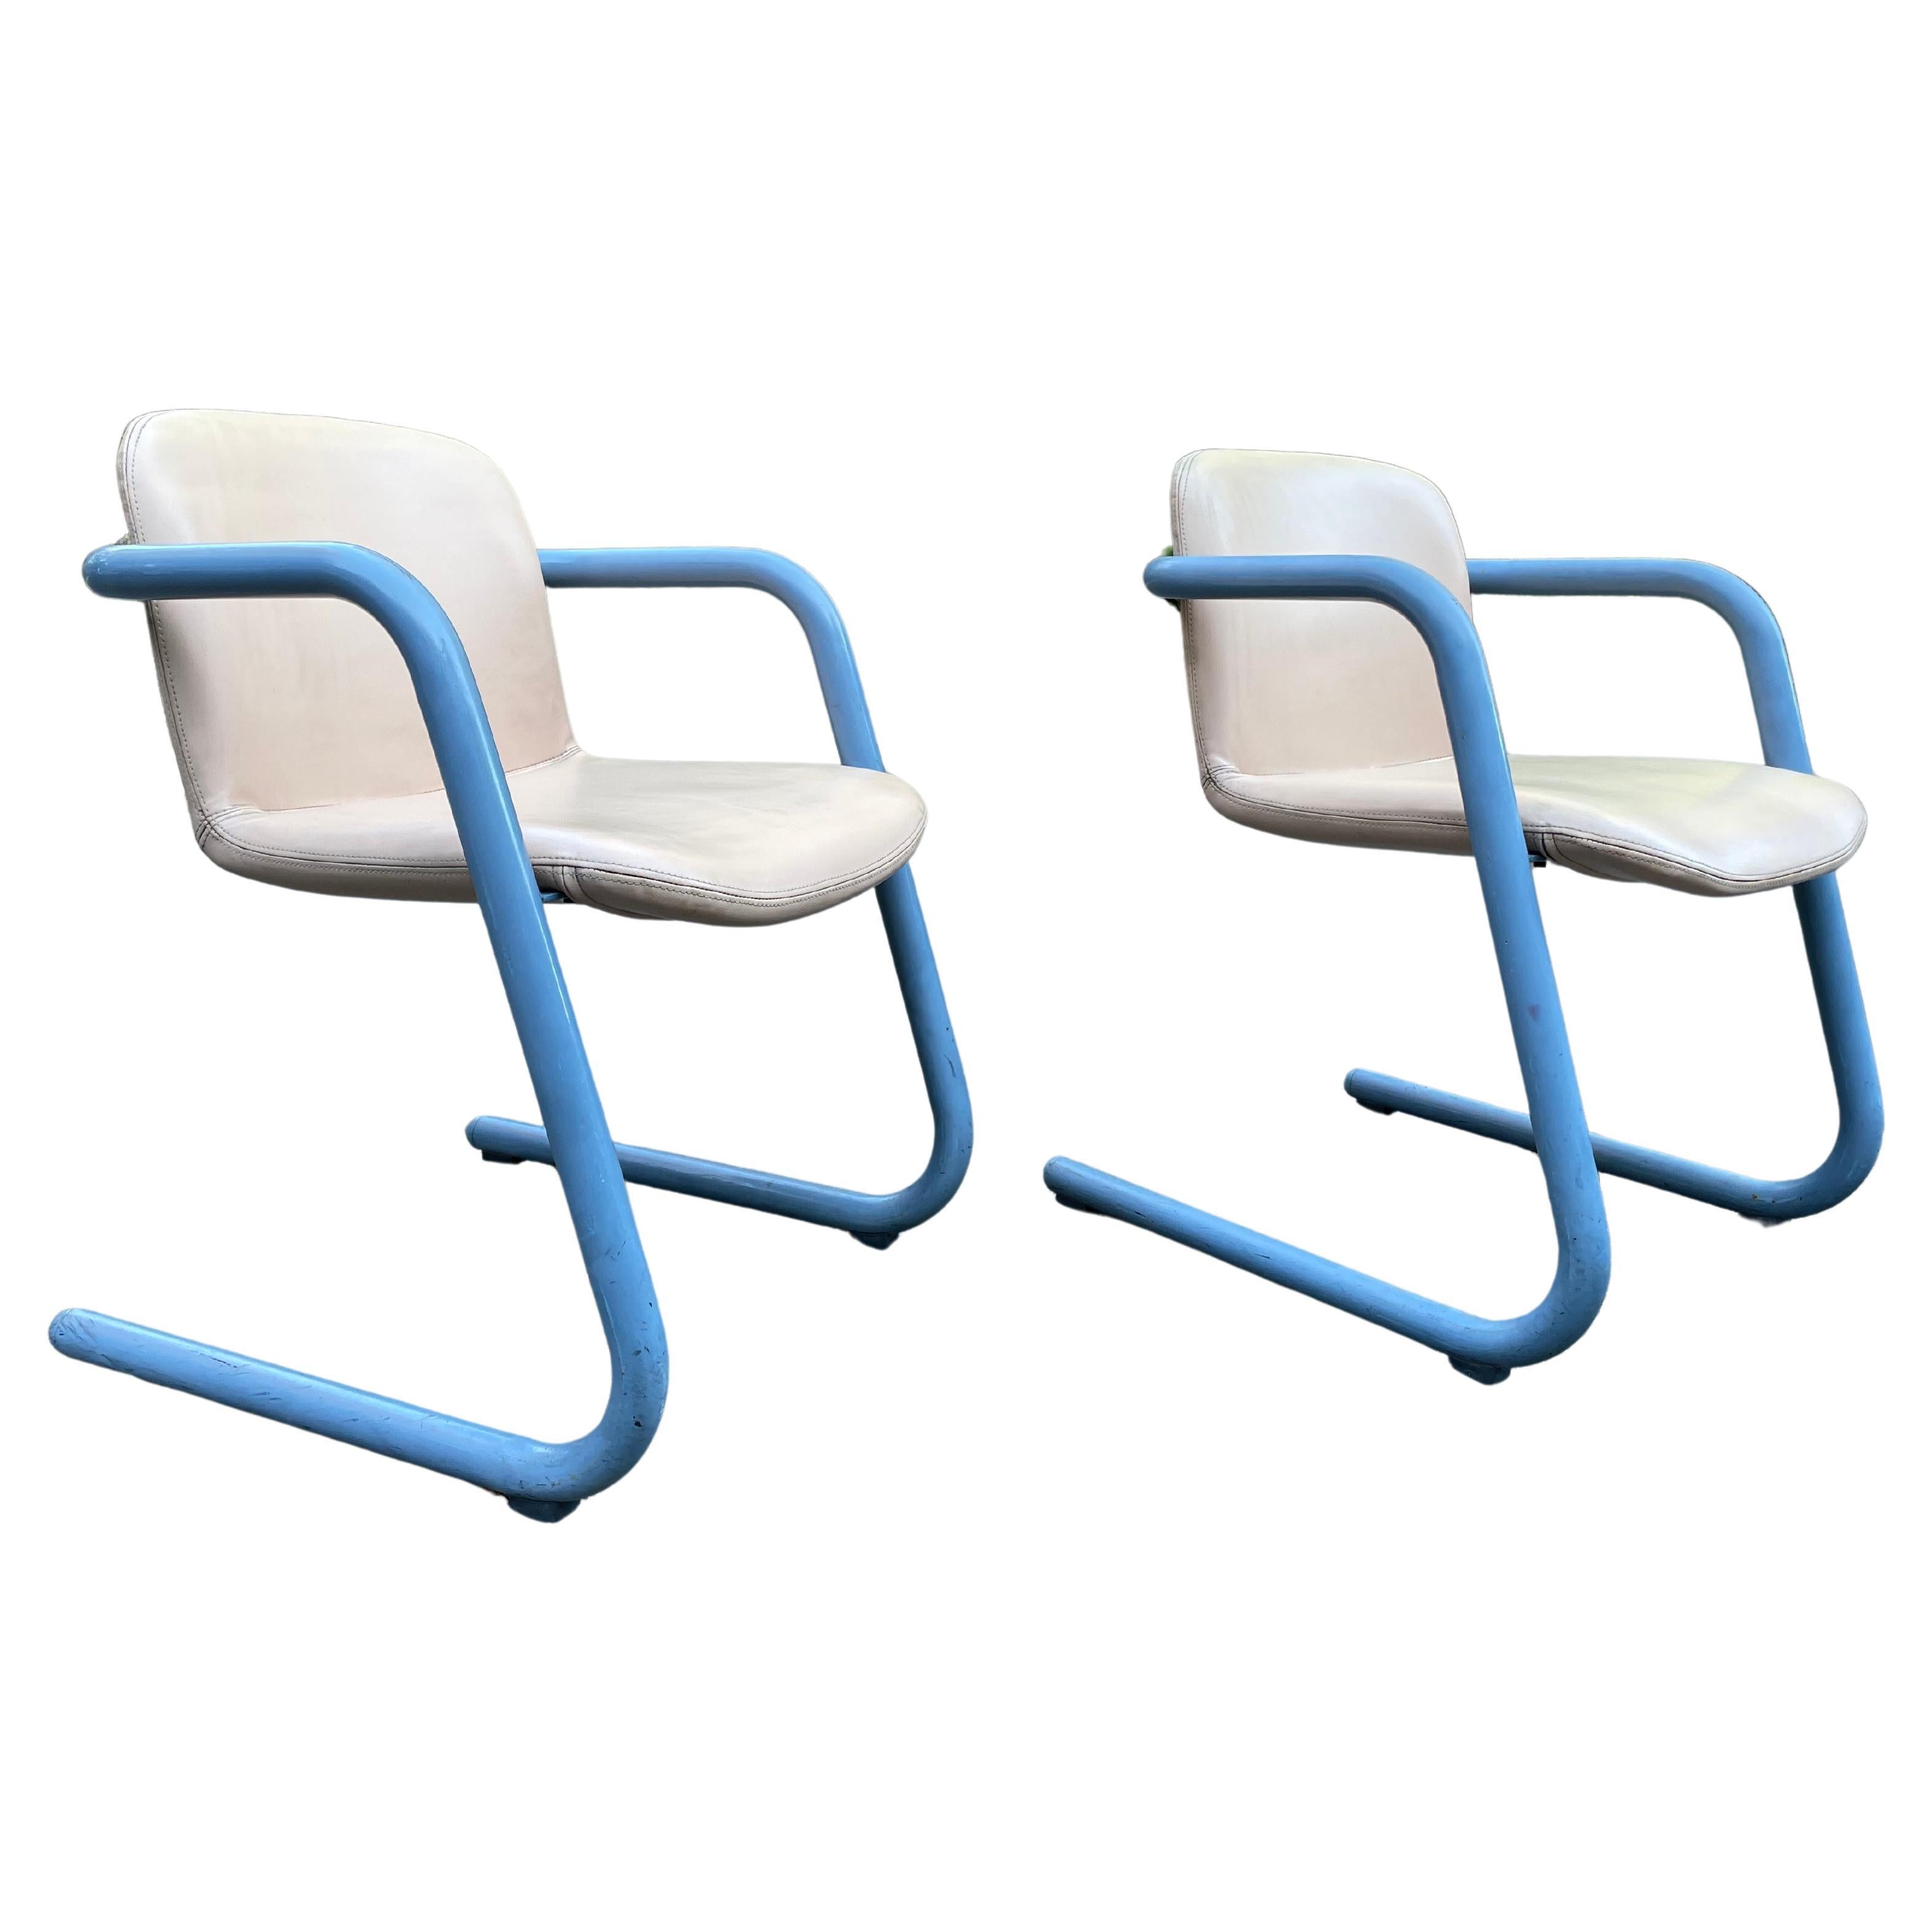 Satz von 2 Vintage Kinetics Blue & Tan 100/300 Stühlen, ca. 1970er Jahre in gutem Zustand. Entworfen von Philip Salmon und Hugh Hamilton für Kinetics.

Wirklich cool. Der Preis gilt für das Paar.

Sehr guter Vintage-Zustand mit kleinen